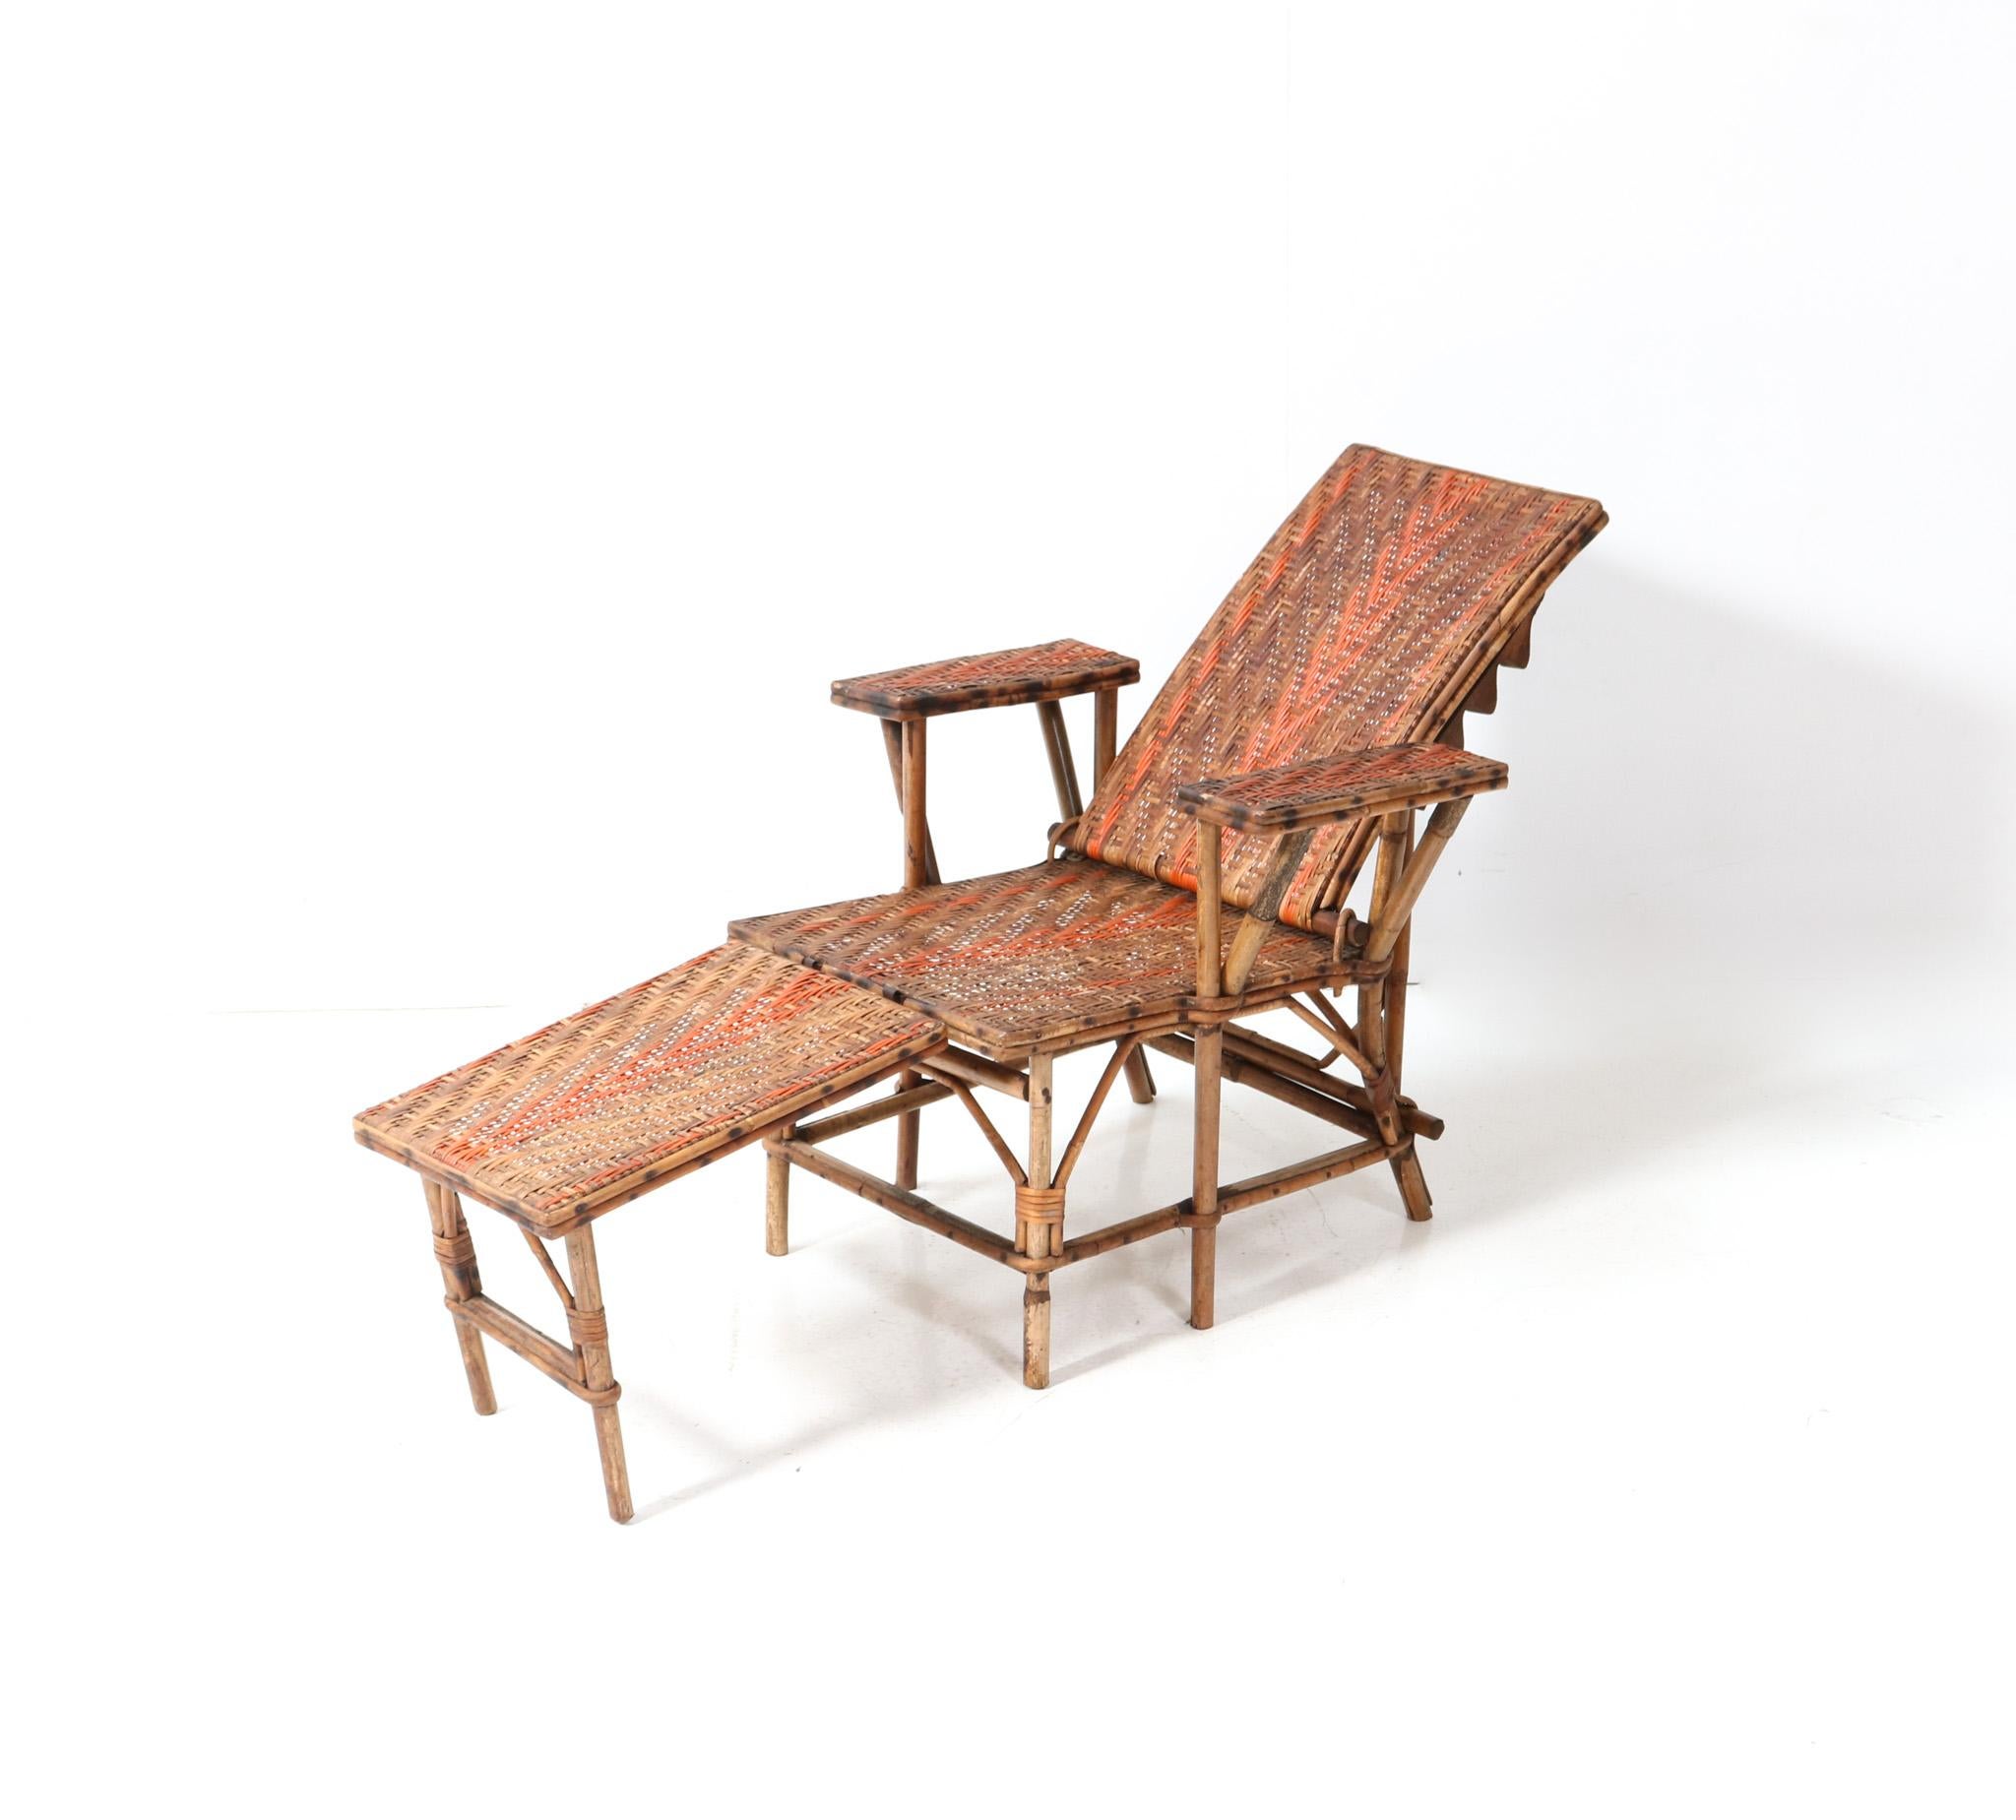 Wunderschöner und seltener Jugendstil-Kinderklappstuhl oder -Liegestuhl.
Auffälliges französisches Design aus den 1900er Jahren.
Gestell aus Rattan und Bambus mit originellem Fußhocker aus Rattan und Bambus.
Maße Fußhocker: H: 33 cm (12.99 in) x B: